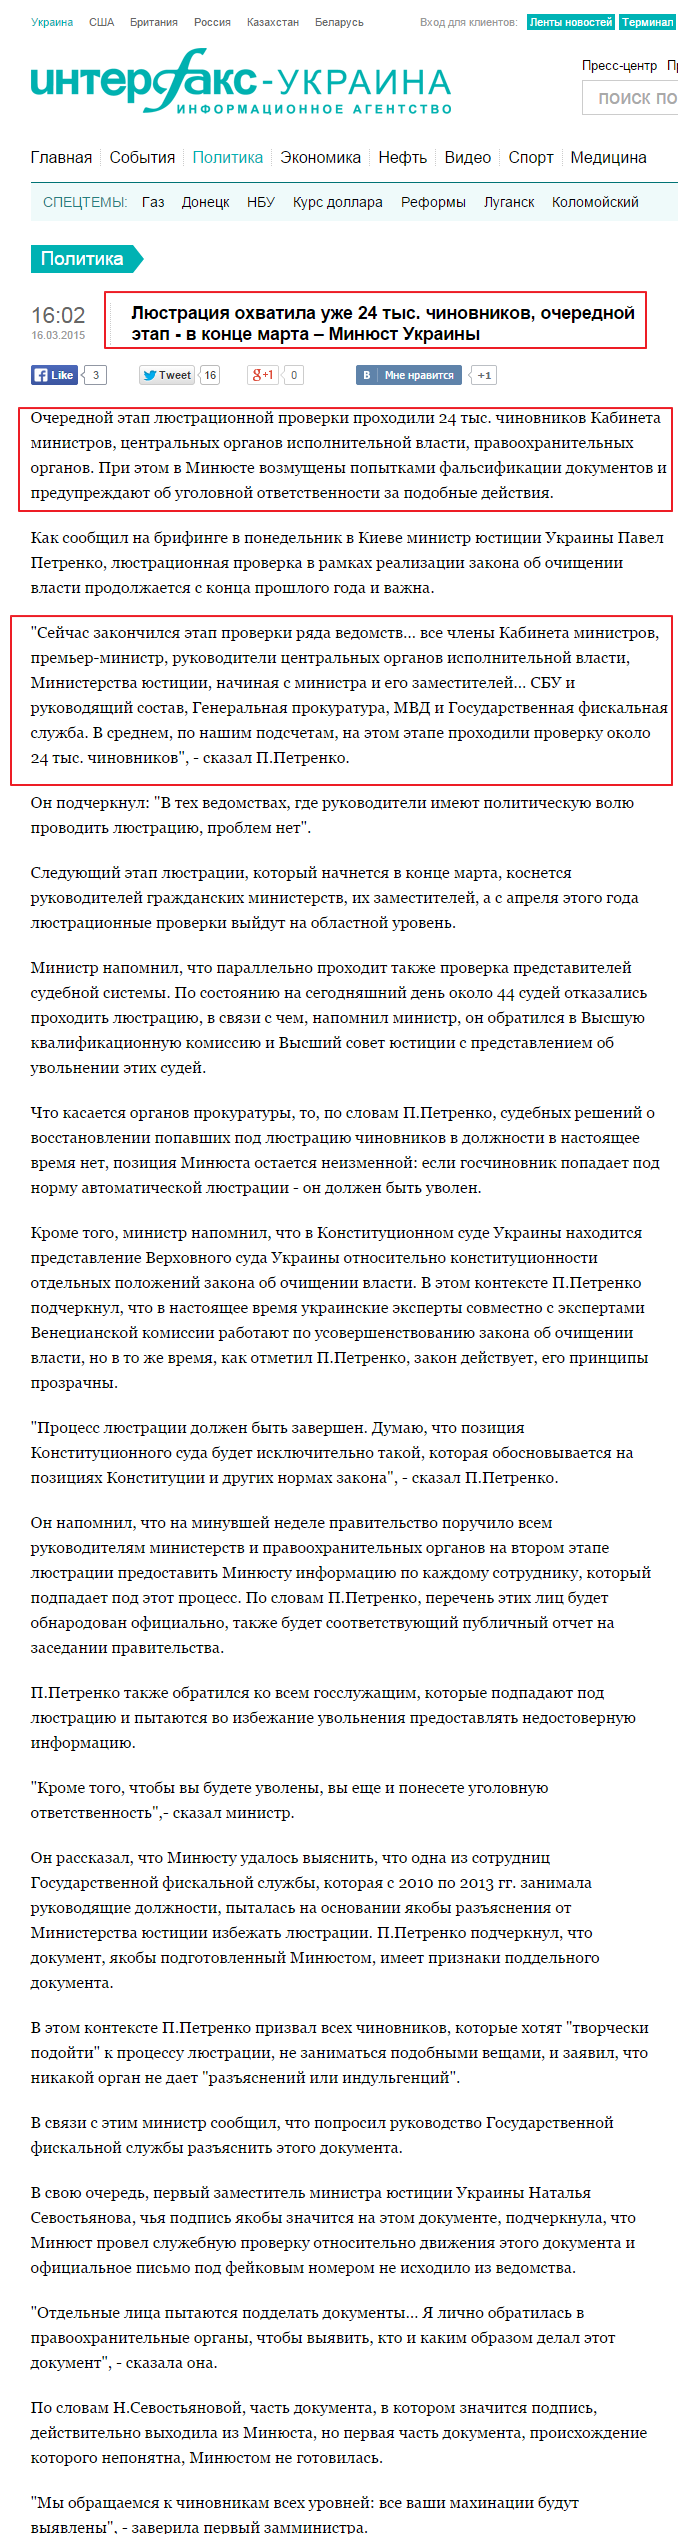 http://interfax.com.ua/news/political/255371.html